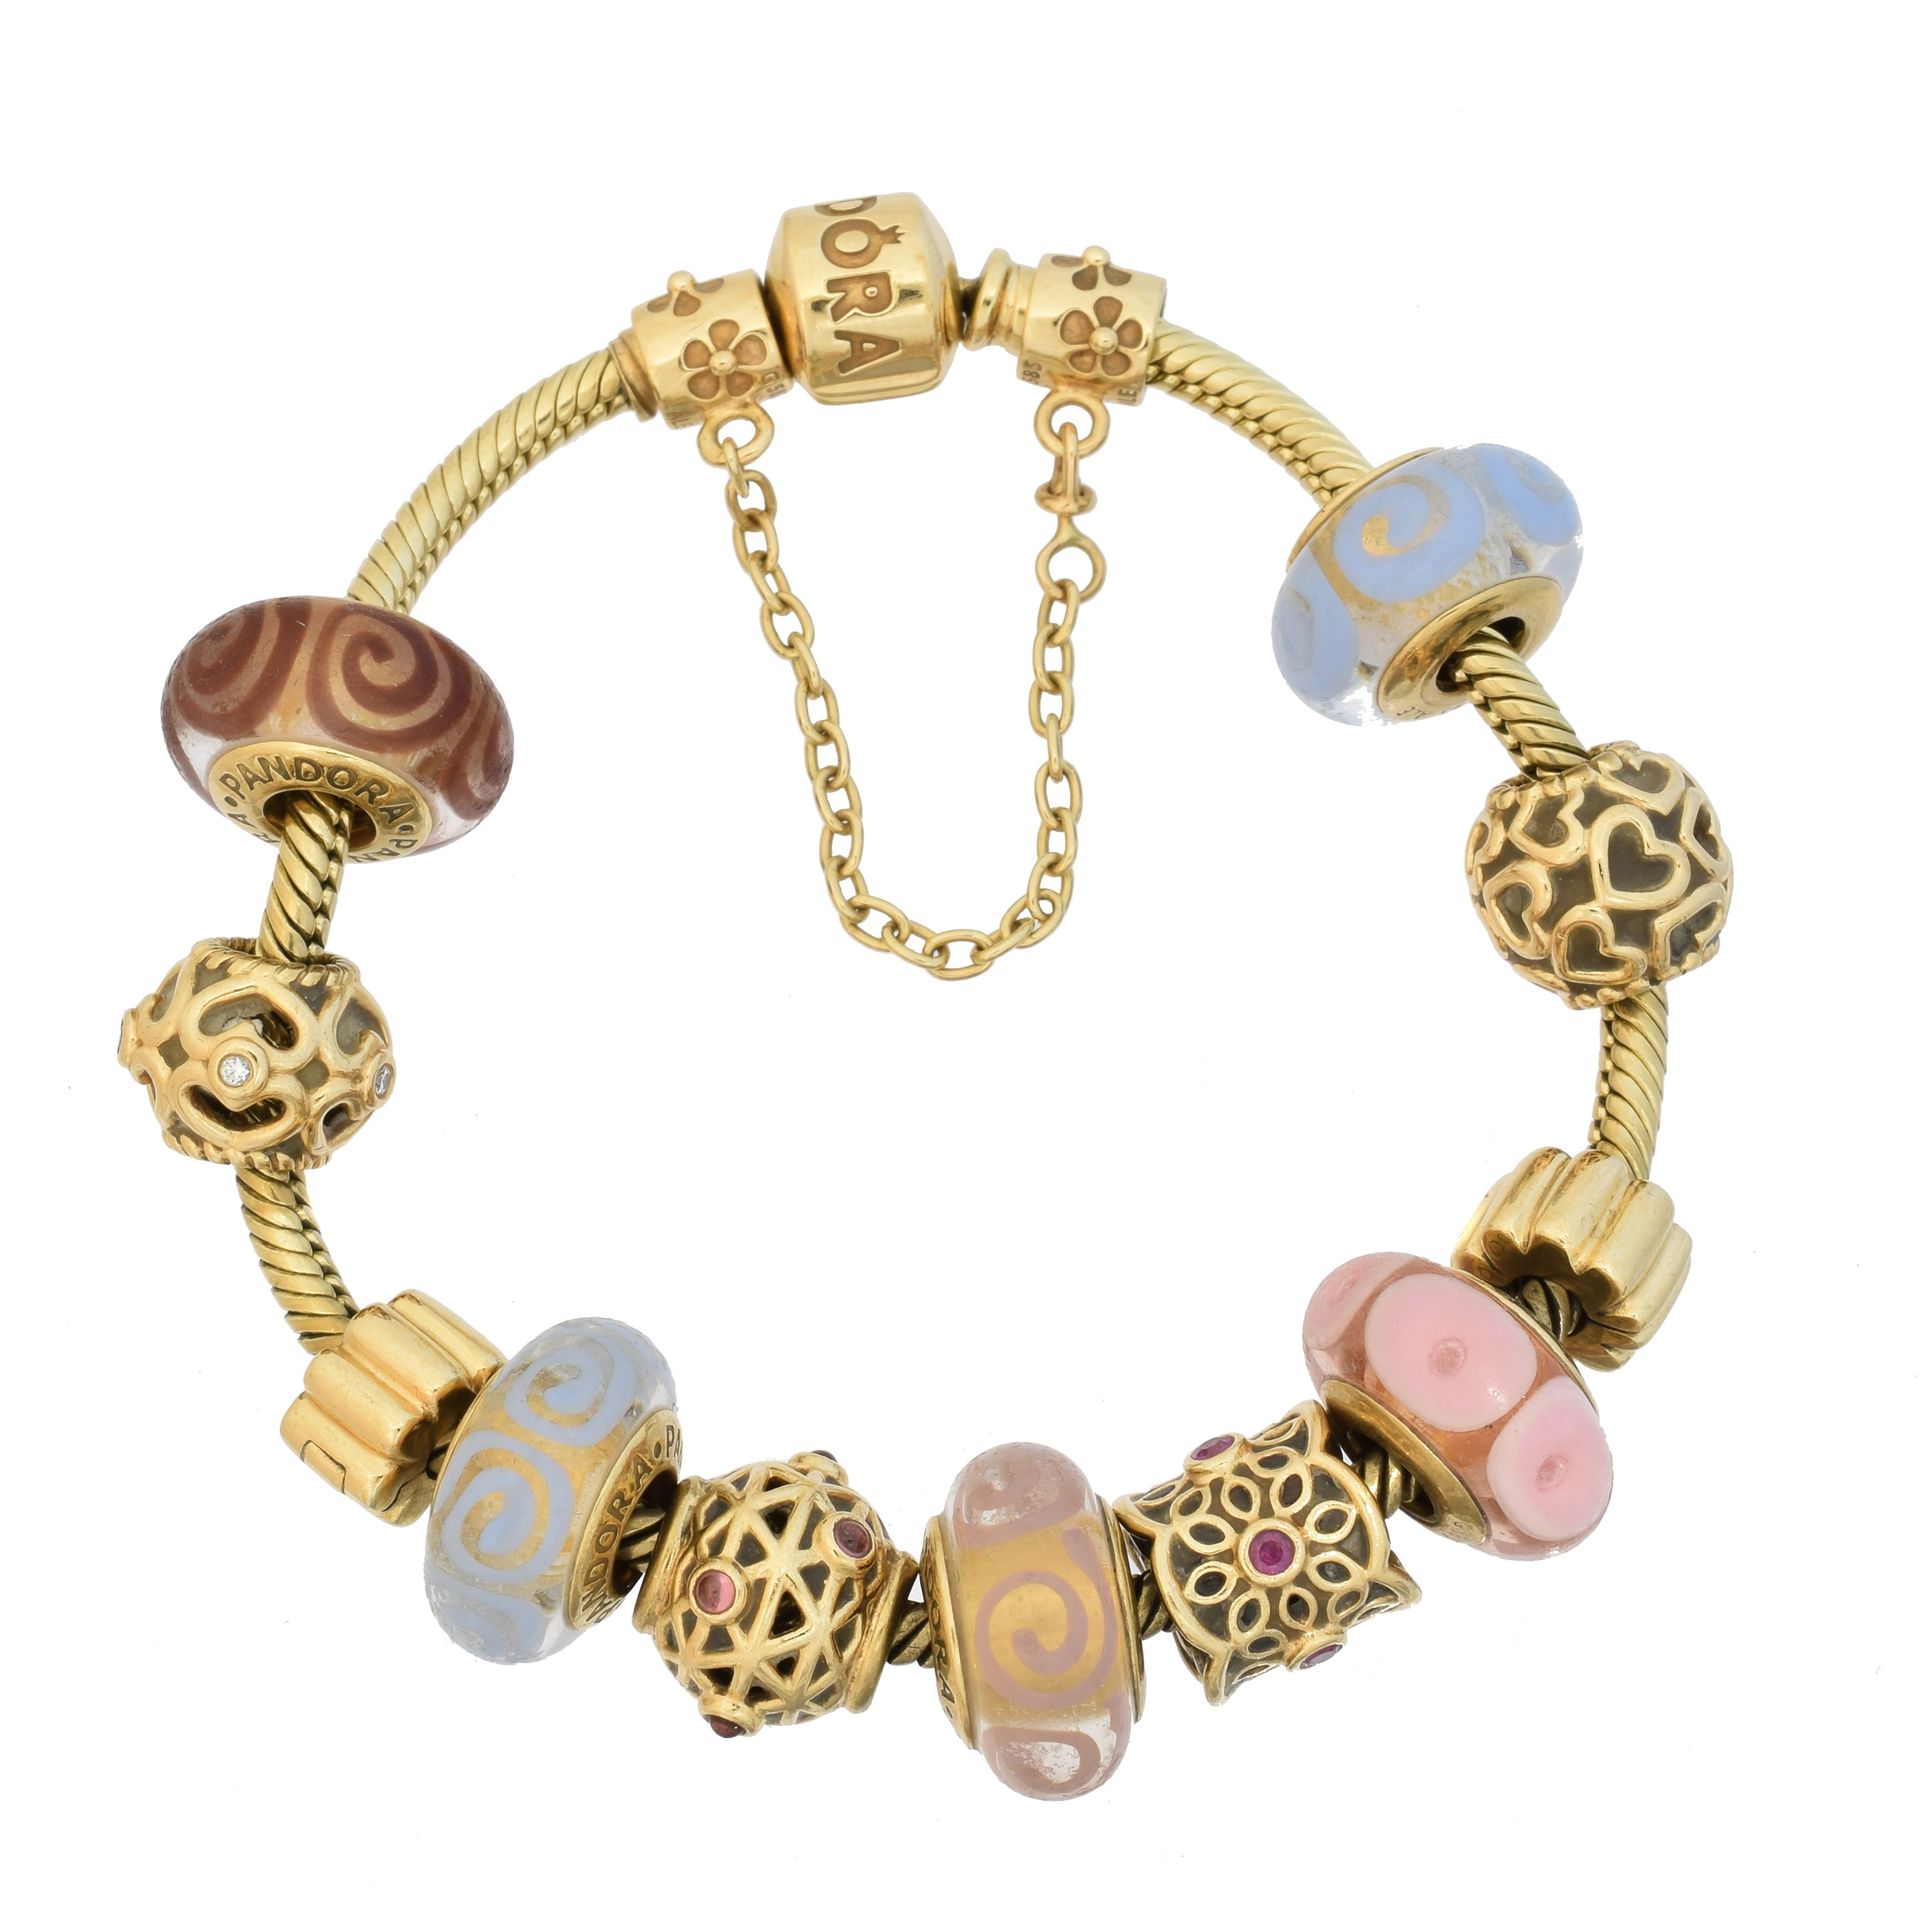 A 14ct gold Pandora charm bracelet, 
Pulsera de oro de 14 quilates con doce colg&hellip;